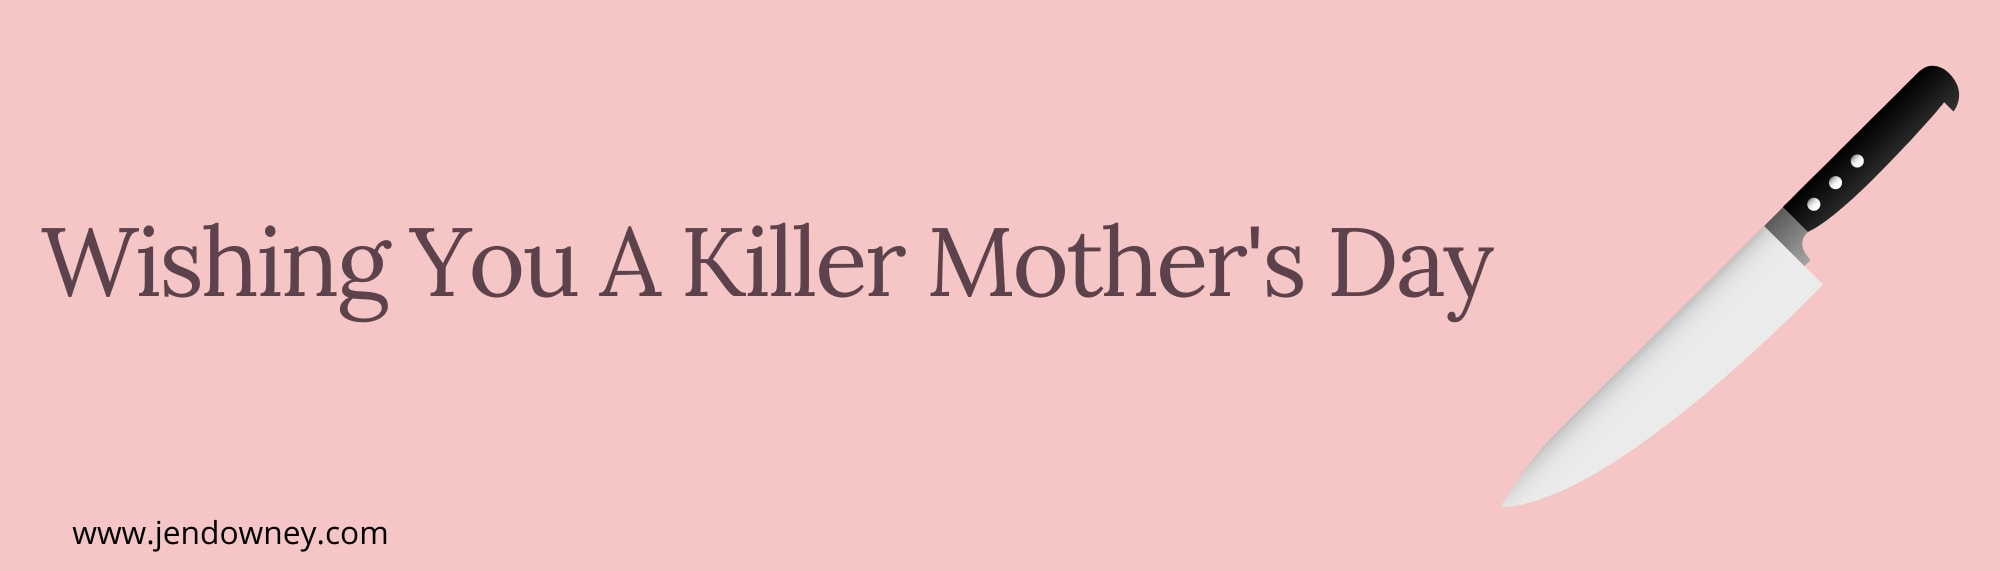 killer mother's day